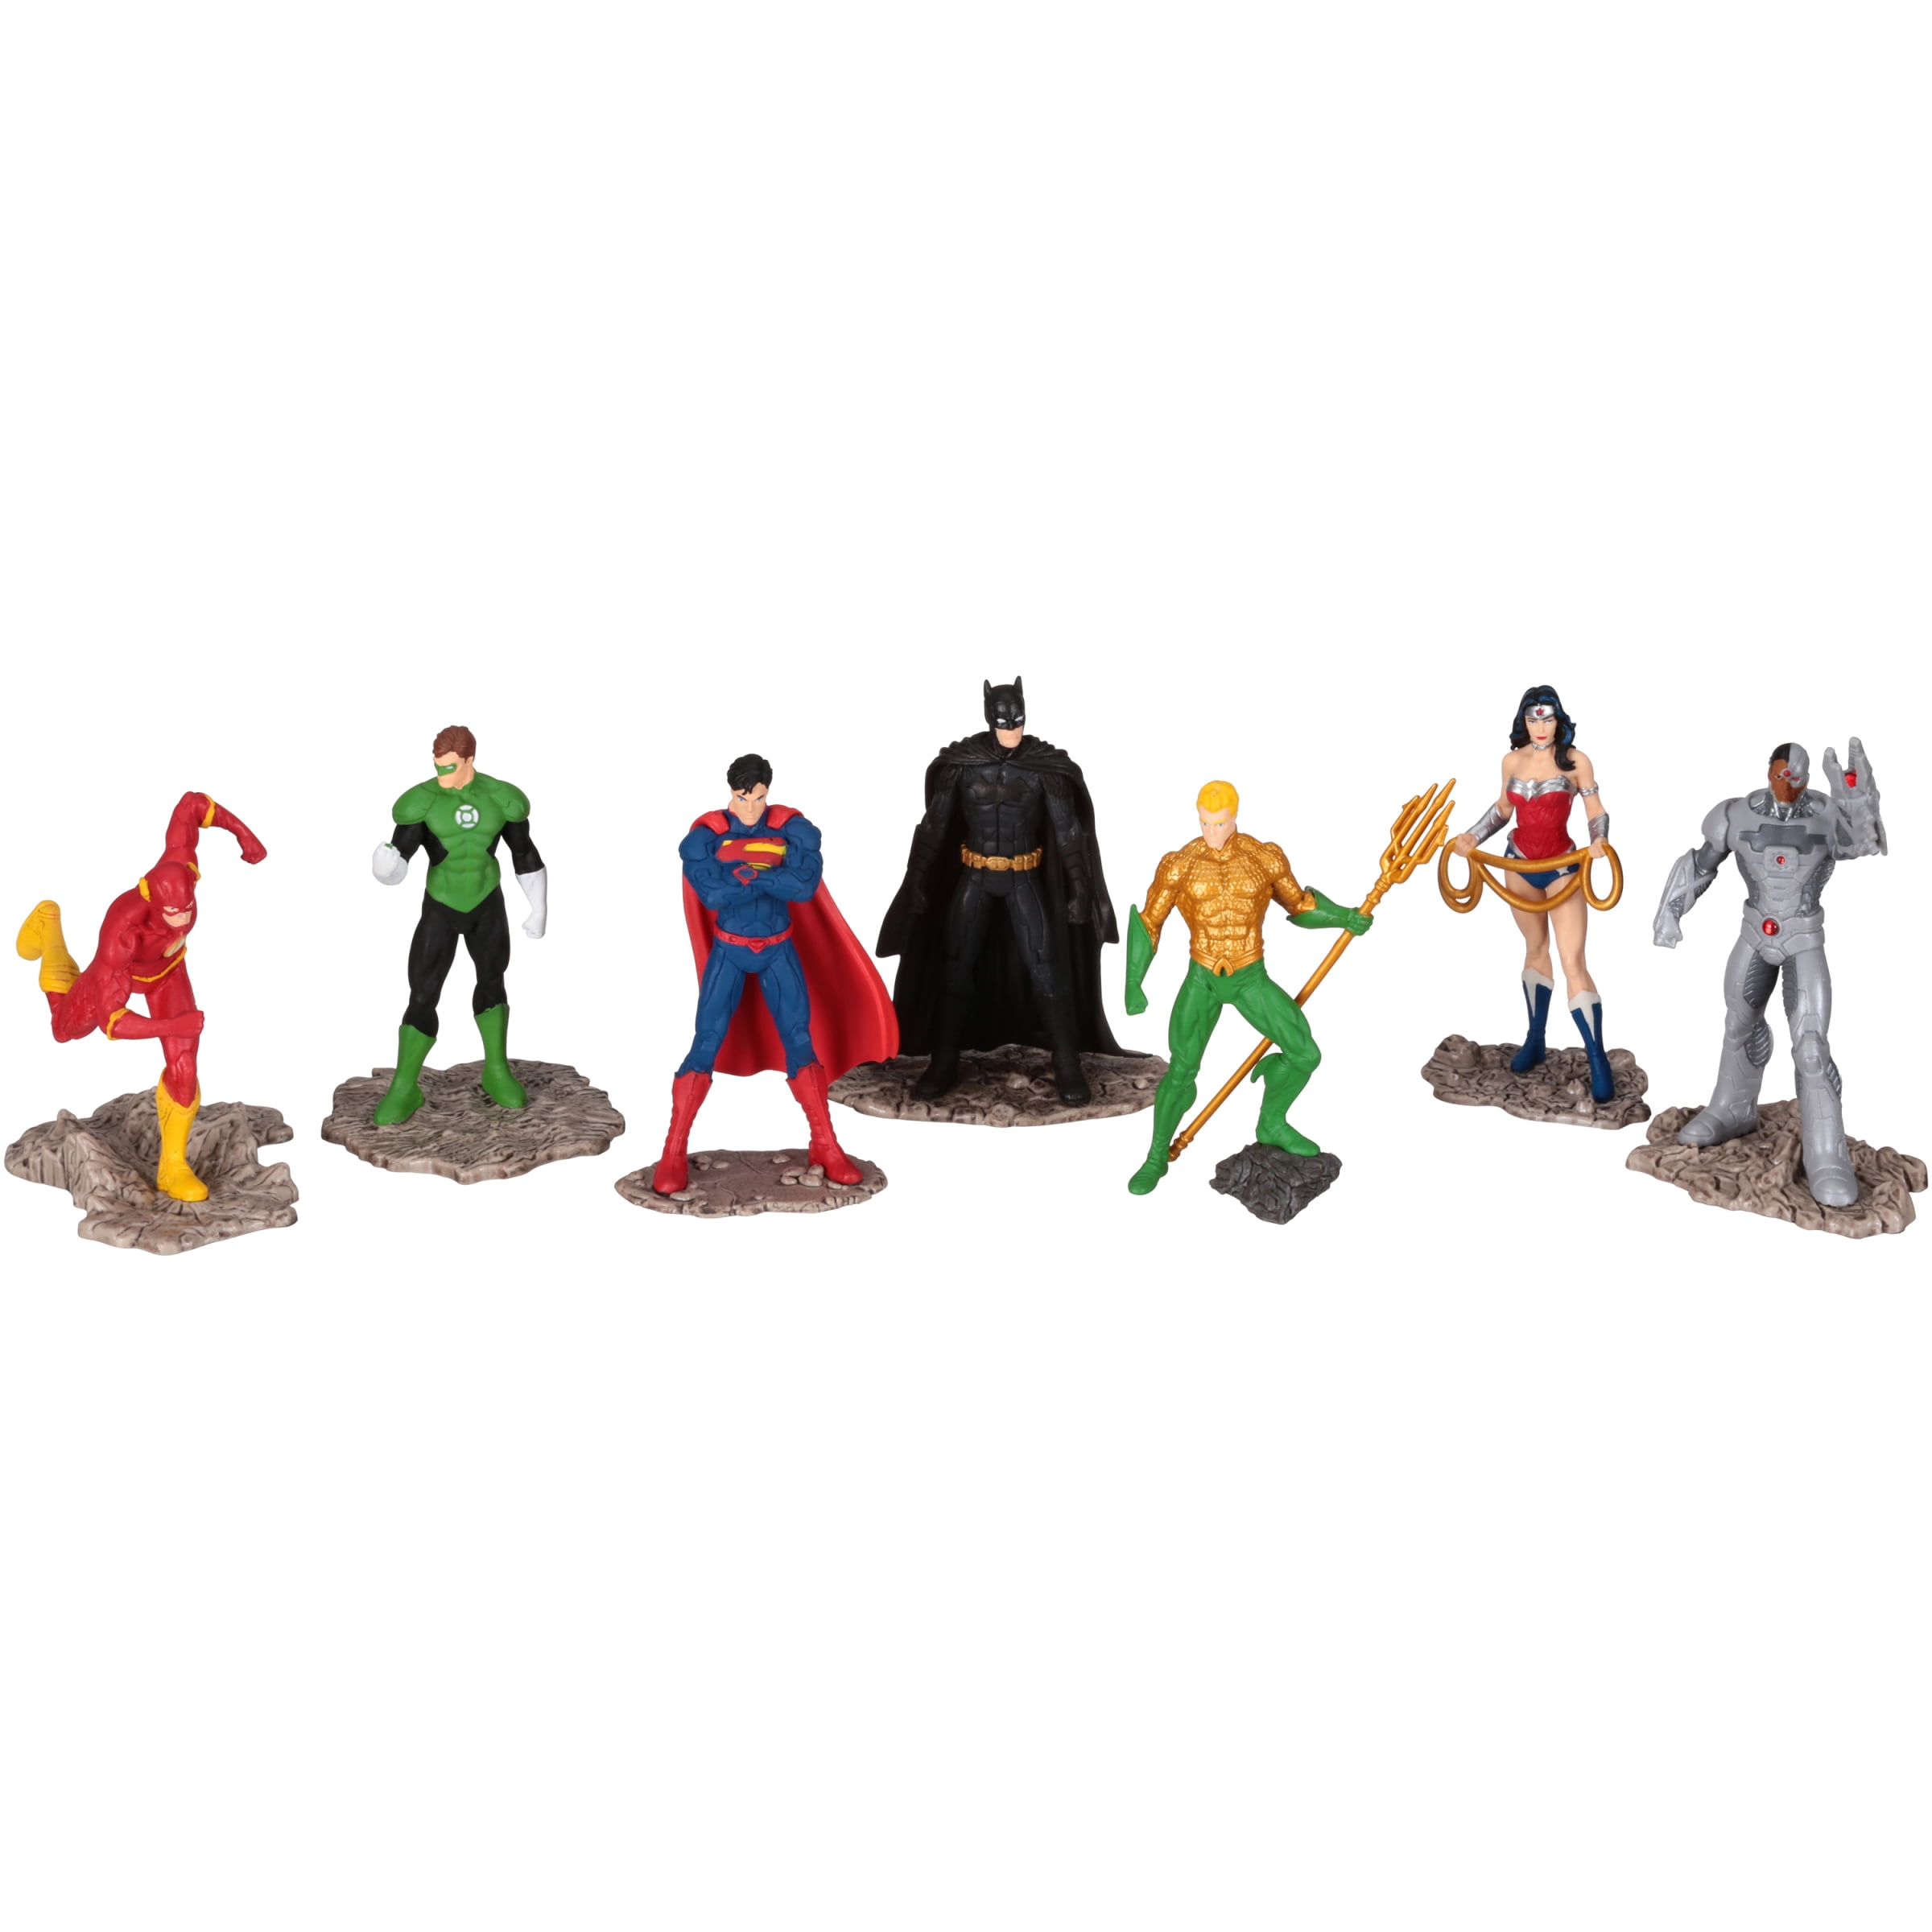 Schleich Toy Figures Collection Figures Batman Superman Justice League DC selection 